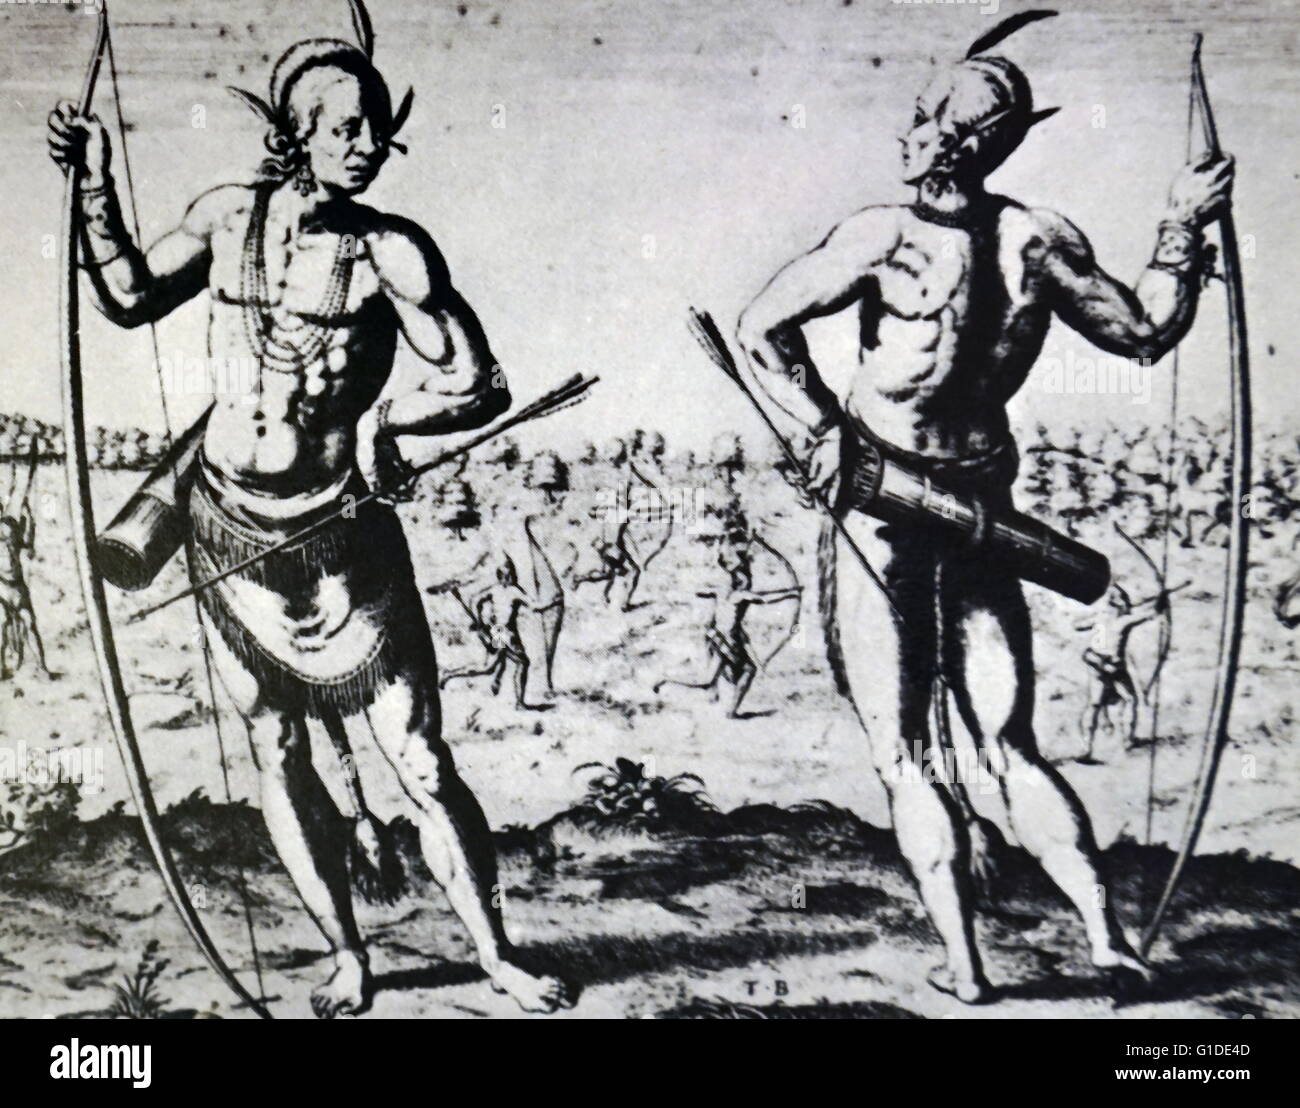 Bild von Virginia Eingeborenen und indianischen Krieger von John White (1540-1593) eines Engländers und Pionier der englischen Anstrengungen zur Beilegung von Nordamerika. Datiert aus dem 16. Jahrhundert Stockfoto